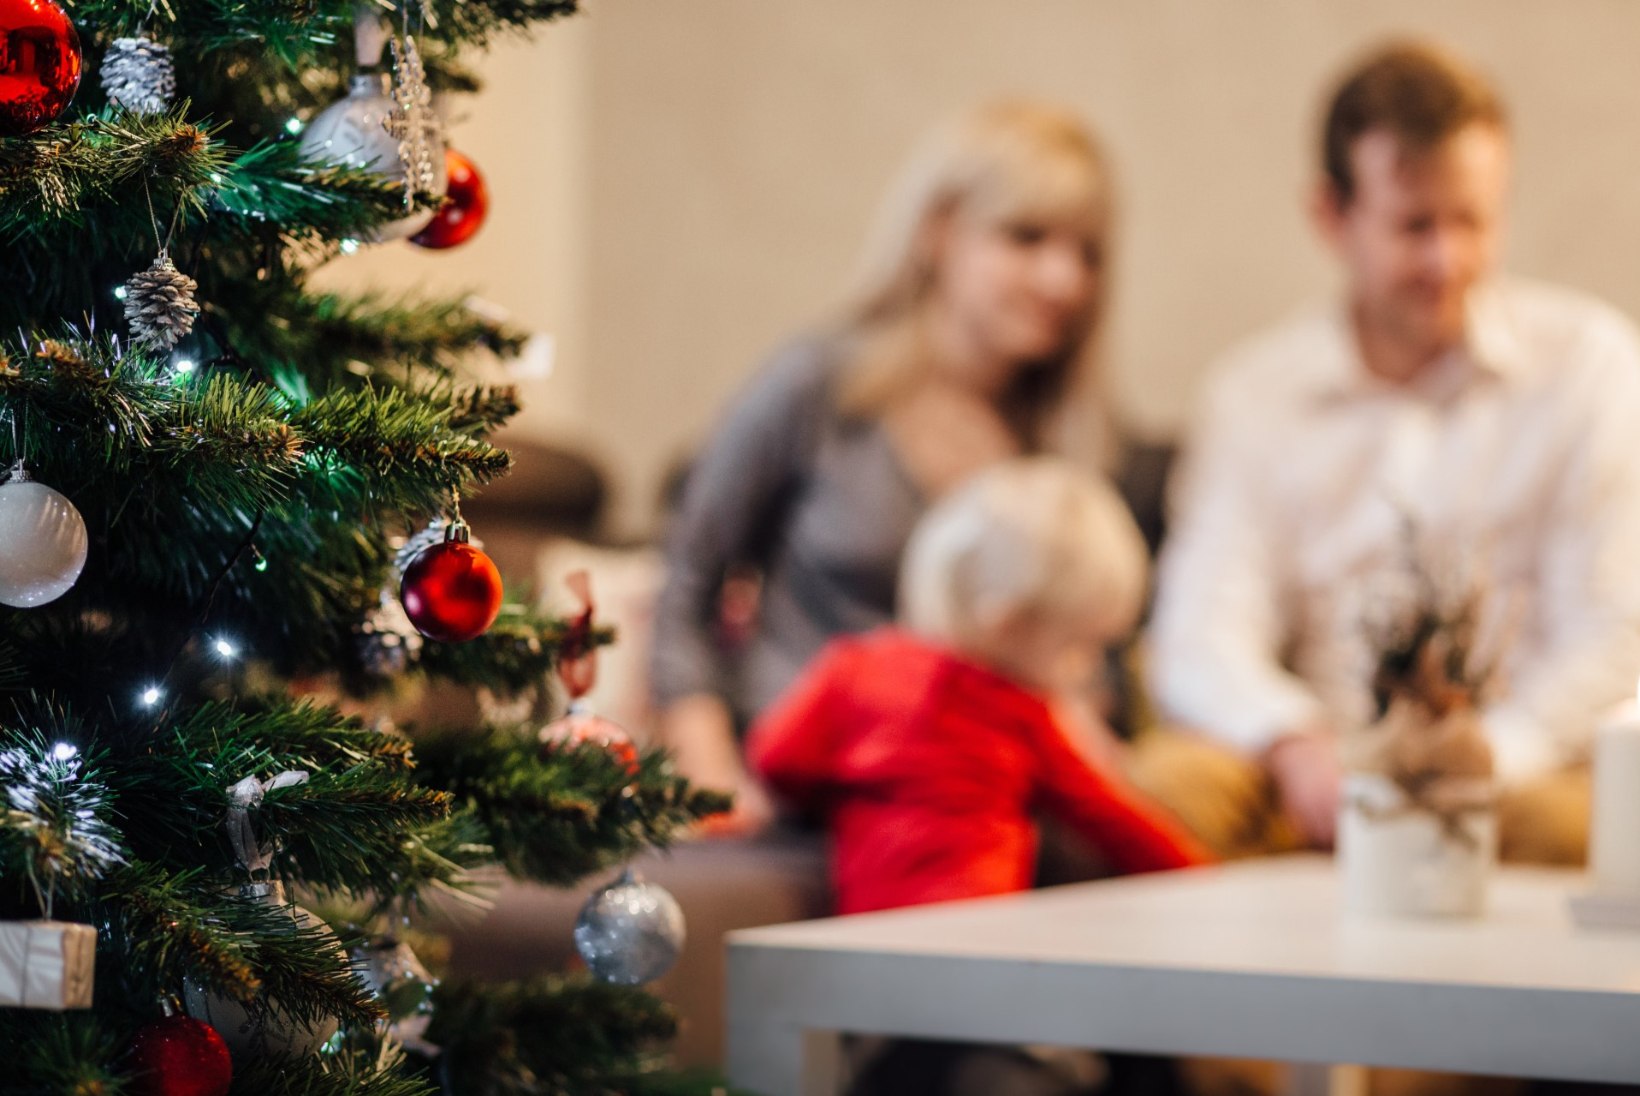 Eesti inimesed arutlevad: milline puu jõuluks tuppa tuuakse?